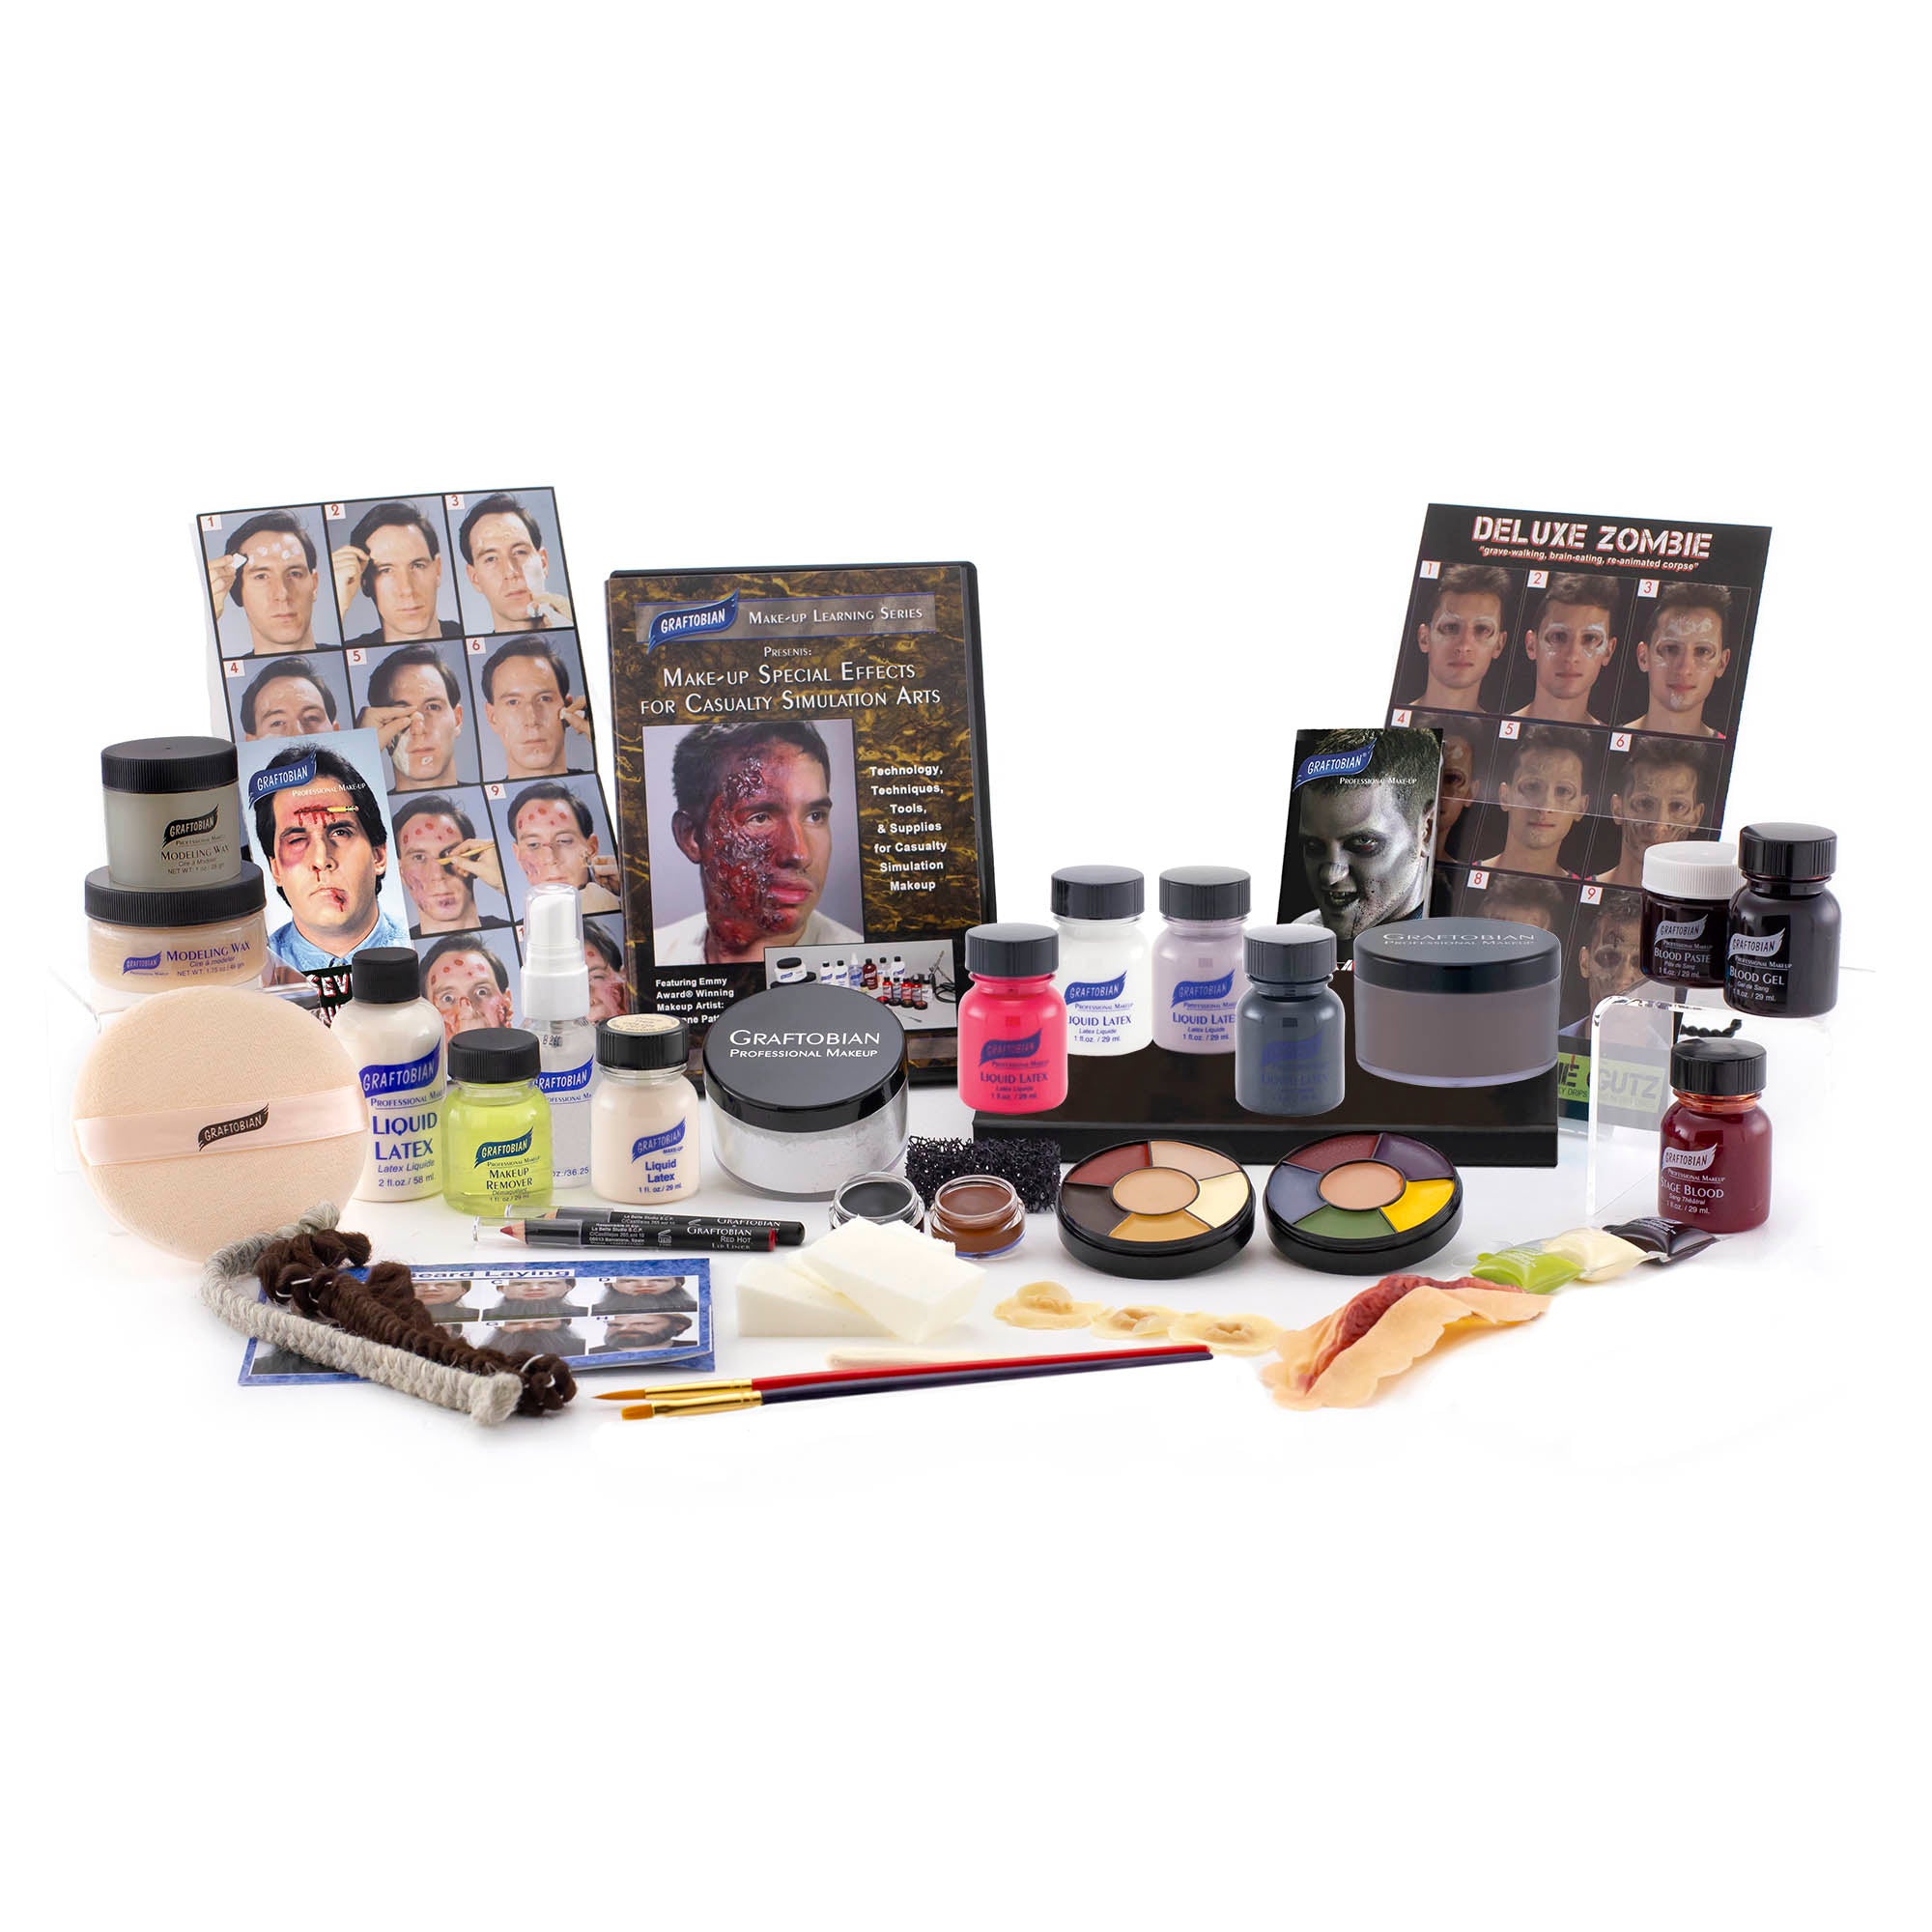 Professional Airbrush Makeup Kit, Makeup Tool Set